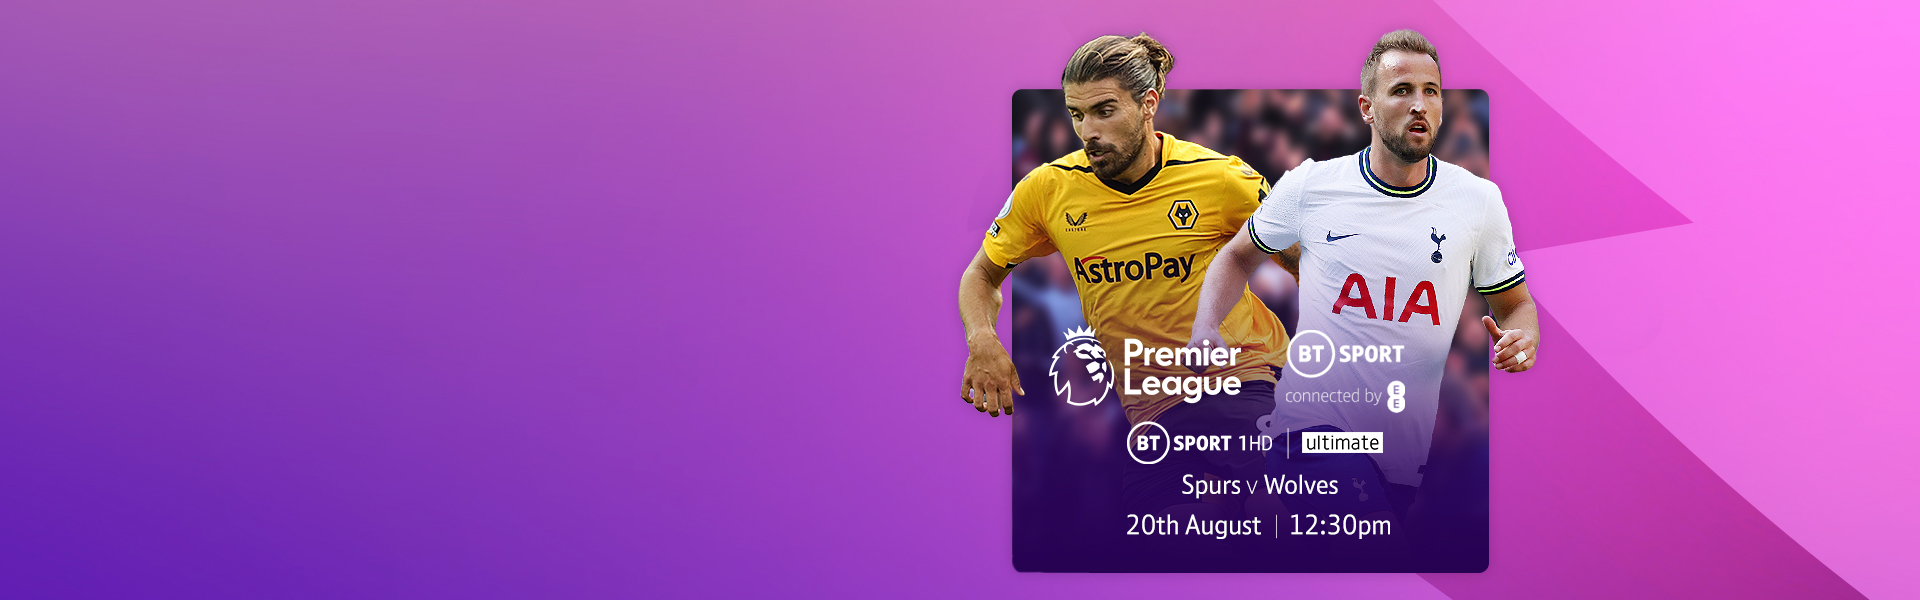 Premier League, live on BT Sport: Spurs v Wolves, Saturday 20 August, 12.30pm